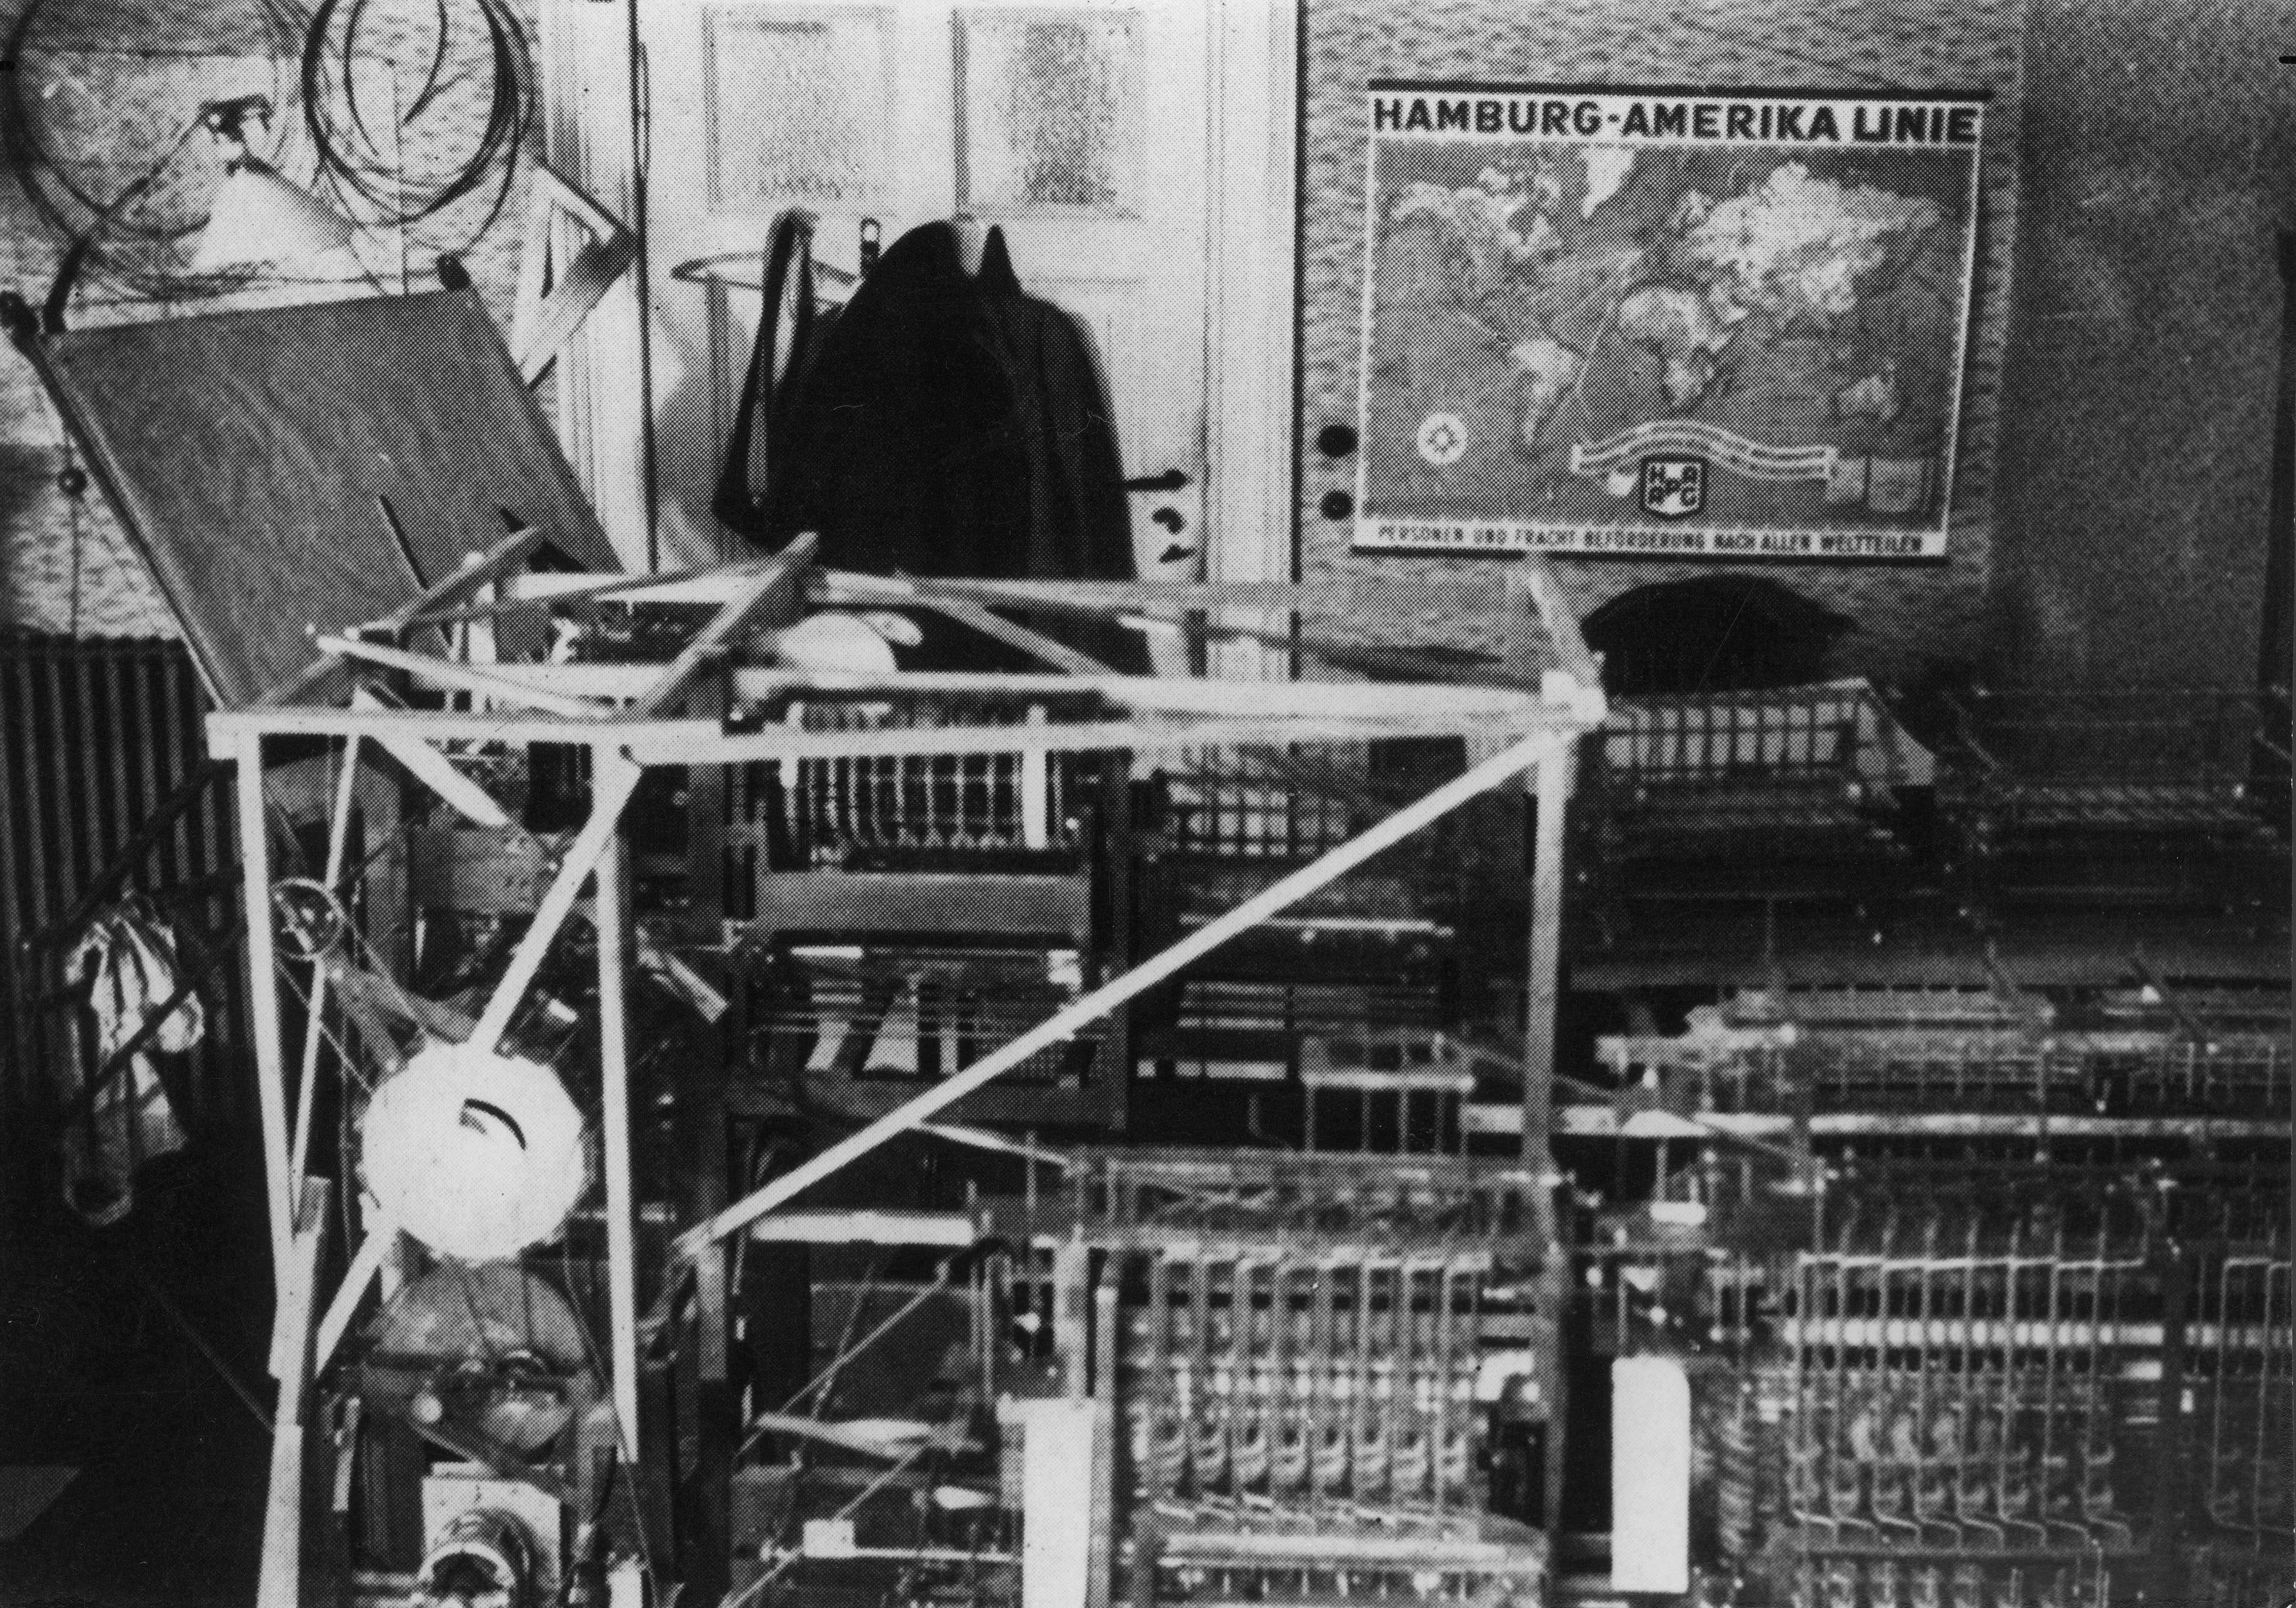 Abb. 2: Die Z1 war ein mechanischer, frei programmierbarer Rechner des
Ingenieurs Konrad Zuse aus dem Jahre 1936. Quelle: Persönliches Archiv
von Horst Zuse, hier abgedruckt mit freundlicher Genehmigung des
Rechteinhabers.